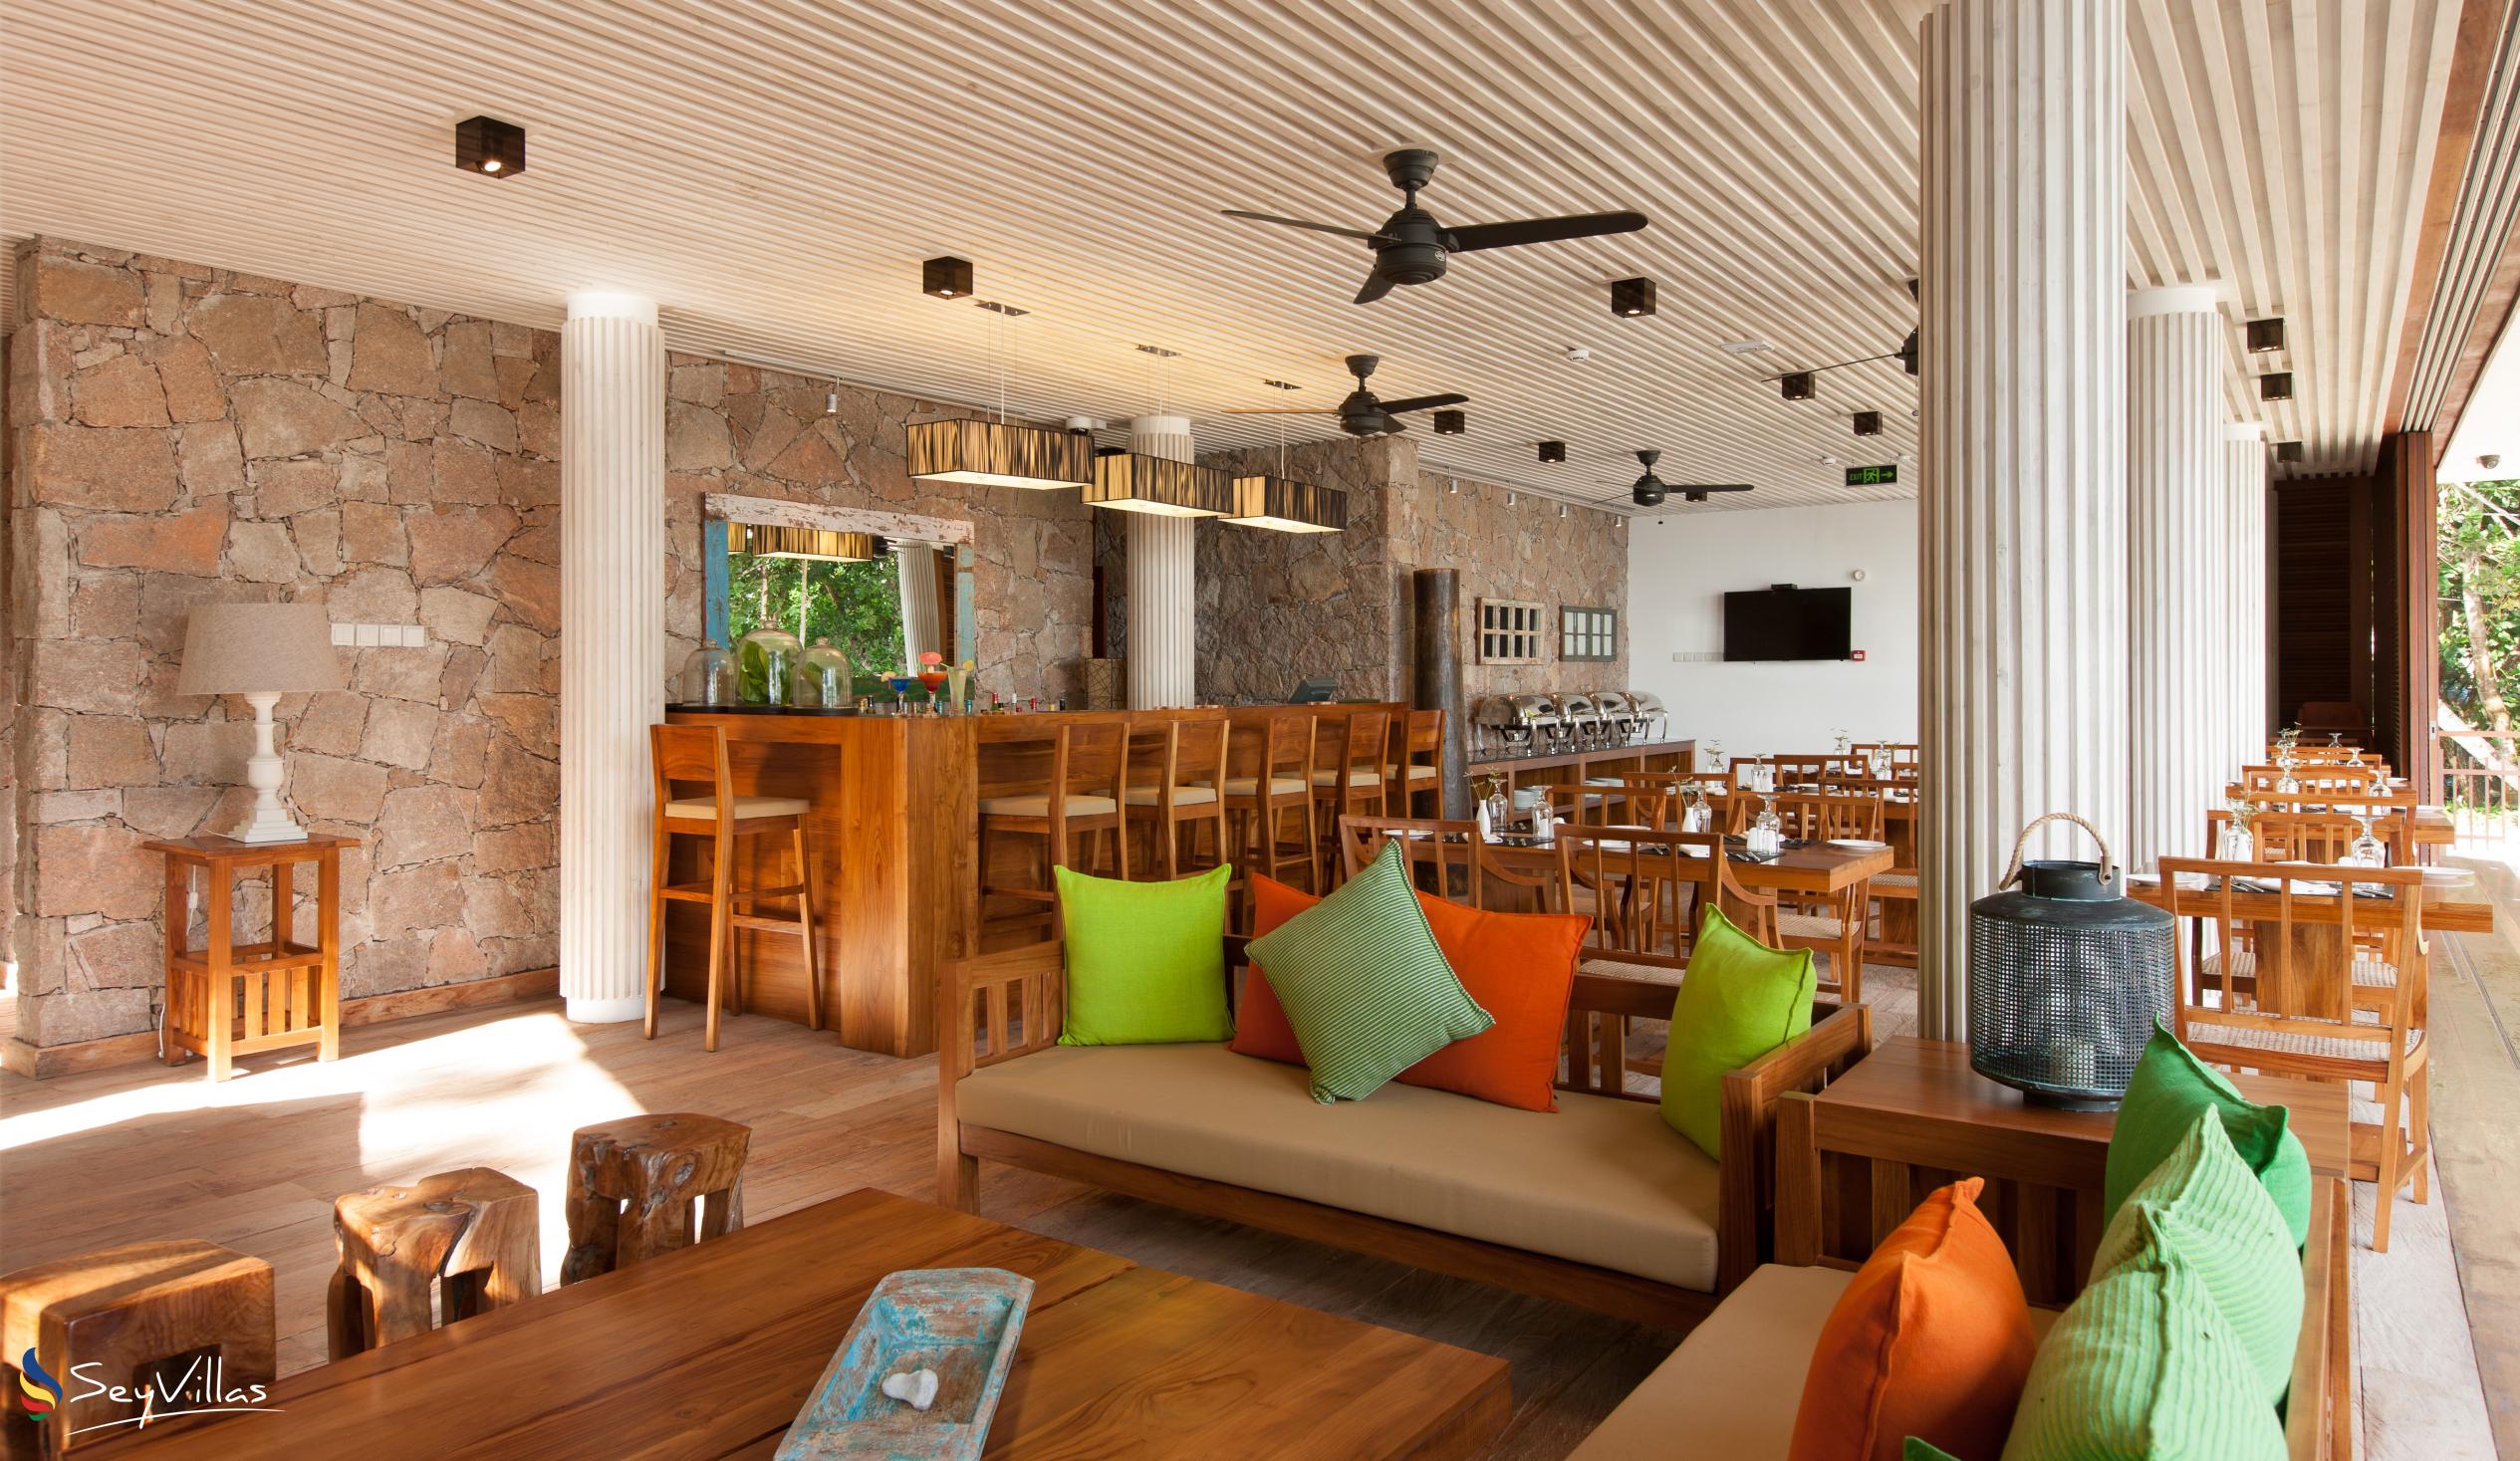 Foto 10: Le Relax Luxury Lodge - Innenbereich - La Digue (Seychellen)